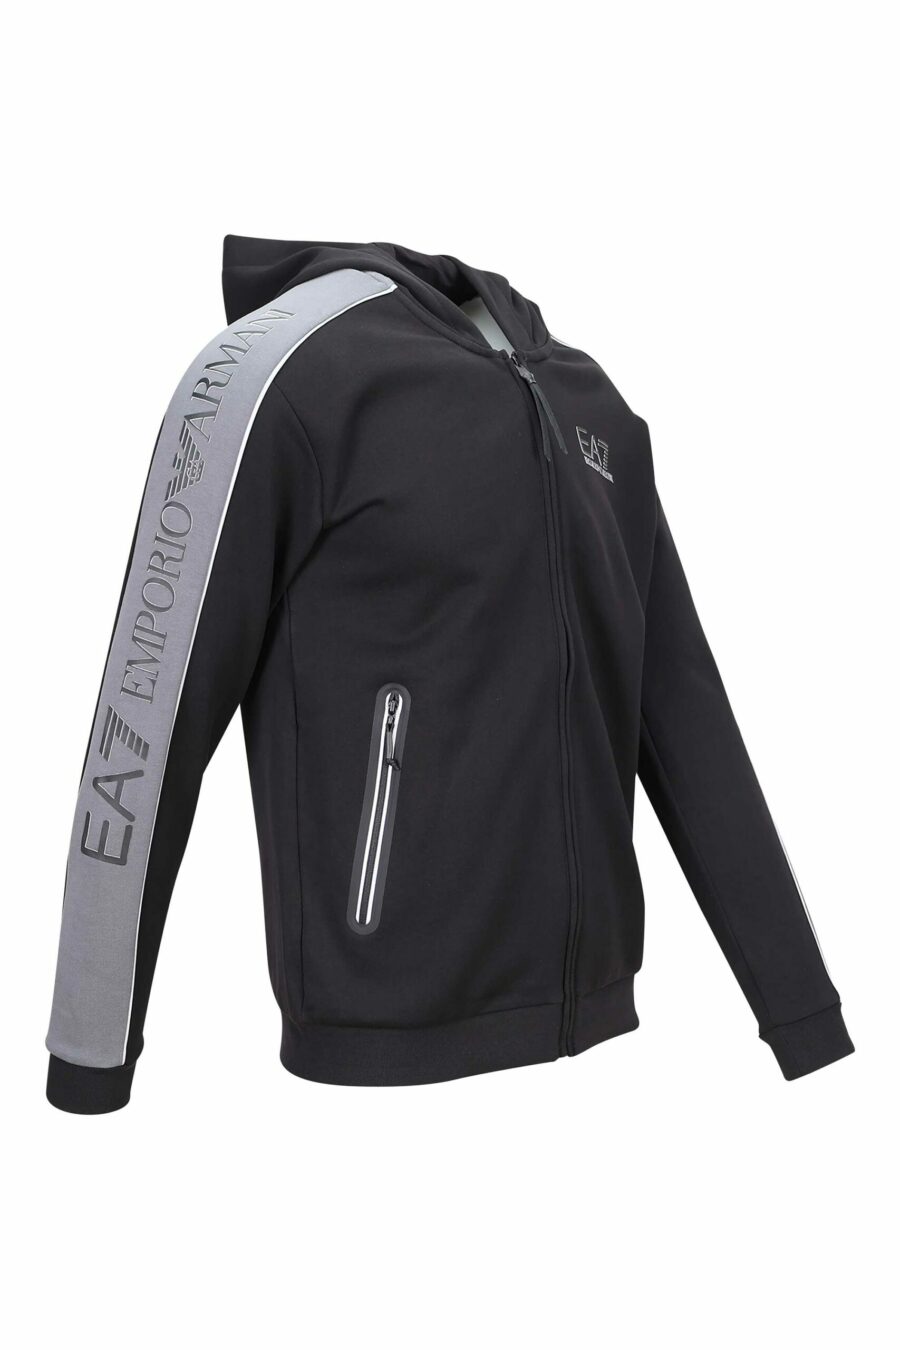 Schwarzes Kapuzensweatshirt mit grauen Linien und Minilog "lux identity" - 8057767628062 1 skaliert